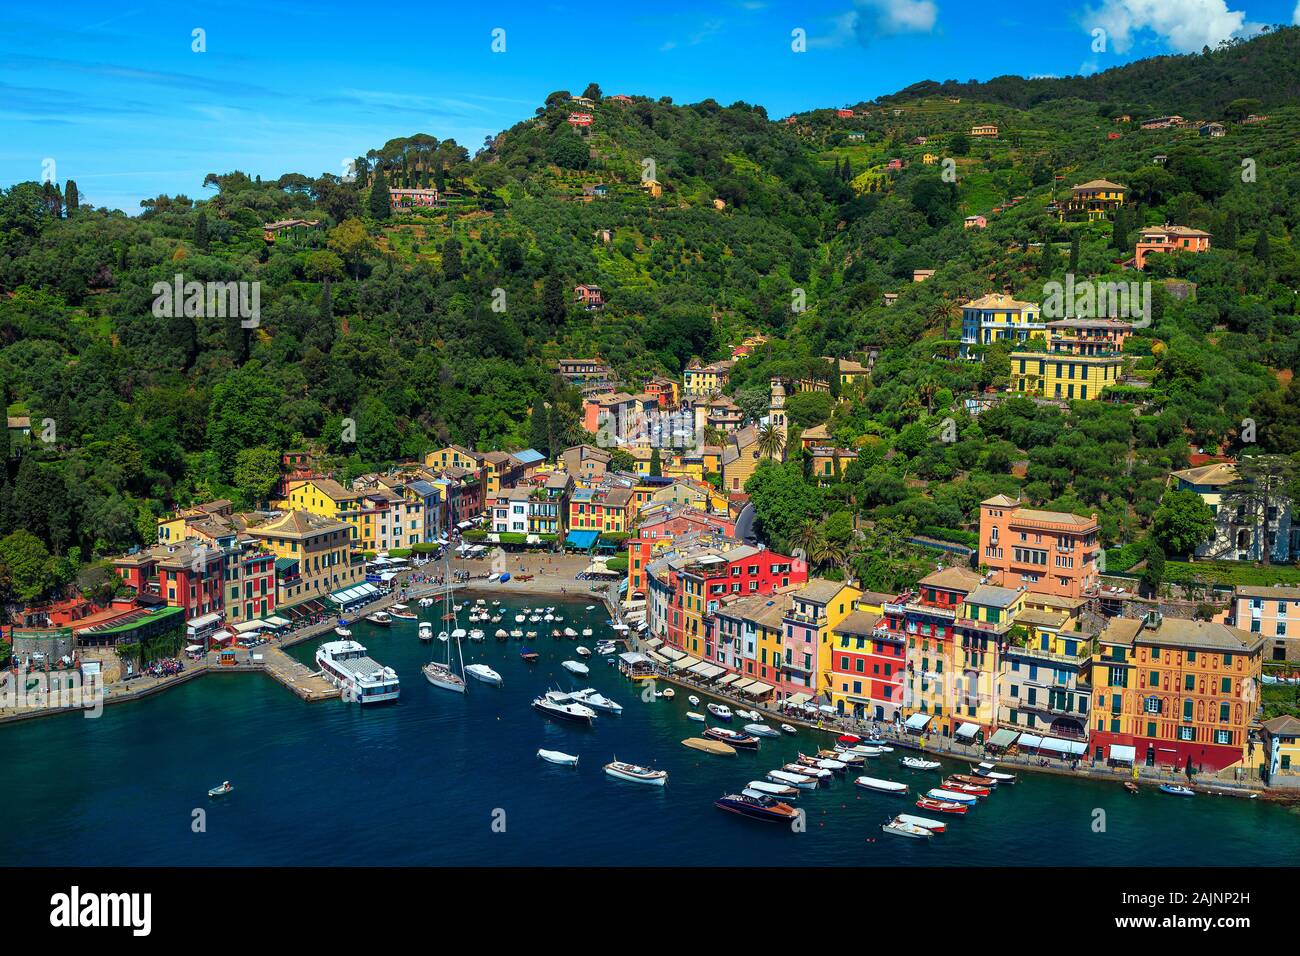 Beliebte Urlaub und Reisen Lage in Ligurien. Bewundernswert Portofino Mediterranean Resort mit bunten Gebäuden und Luxus, Boote, Yachten. Großartige Aussicht Stockfoto